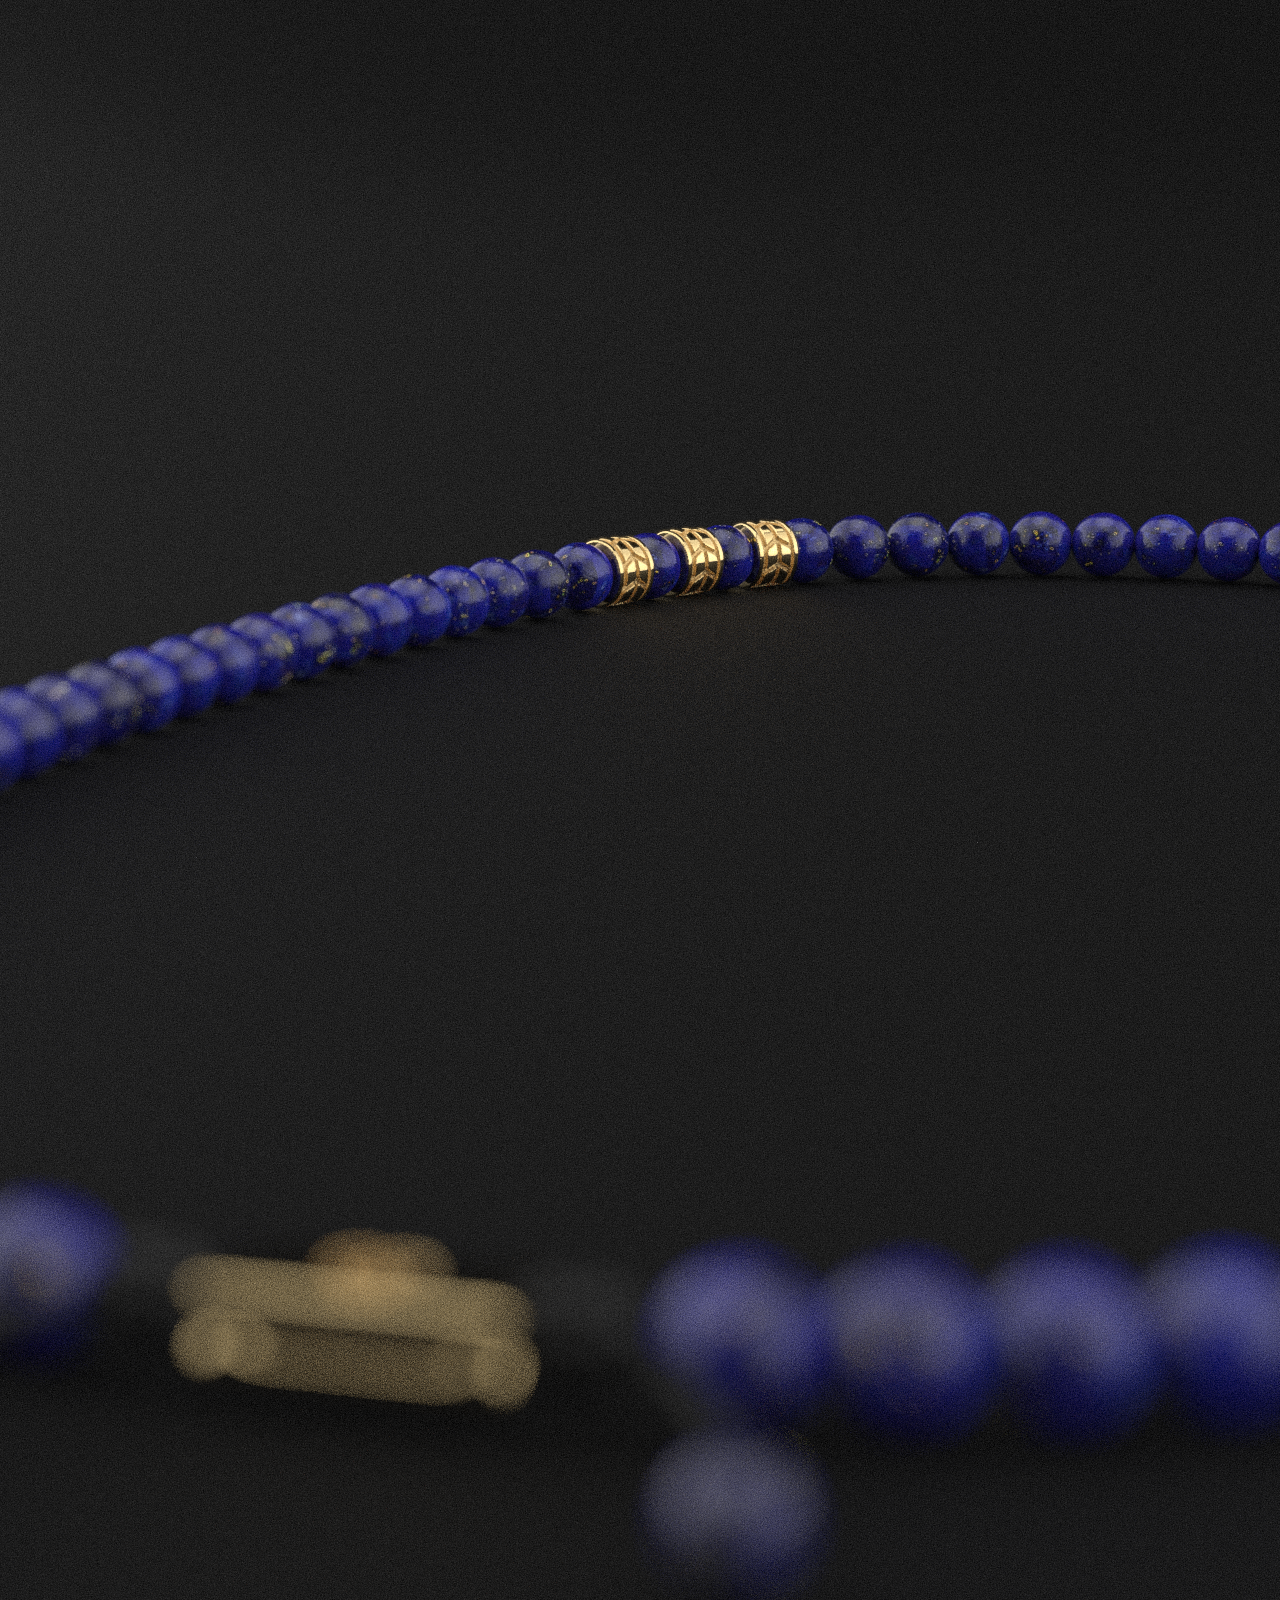 Lapis Lazuli Necklace 8mm | Royale